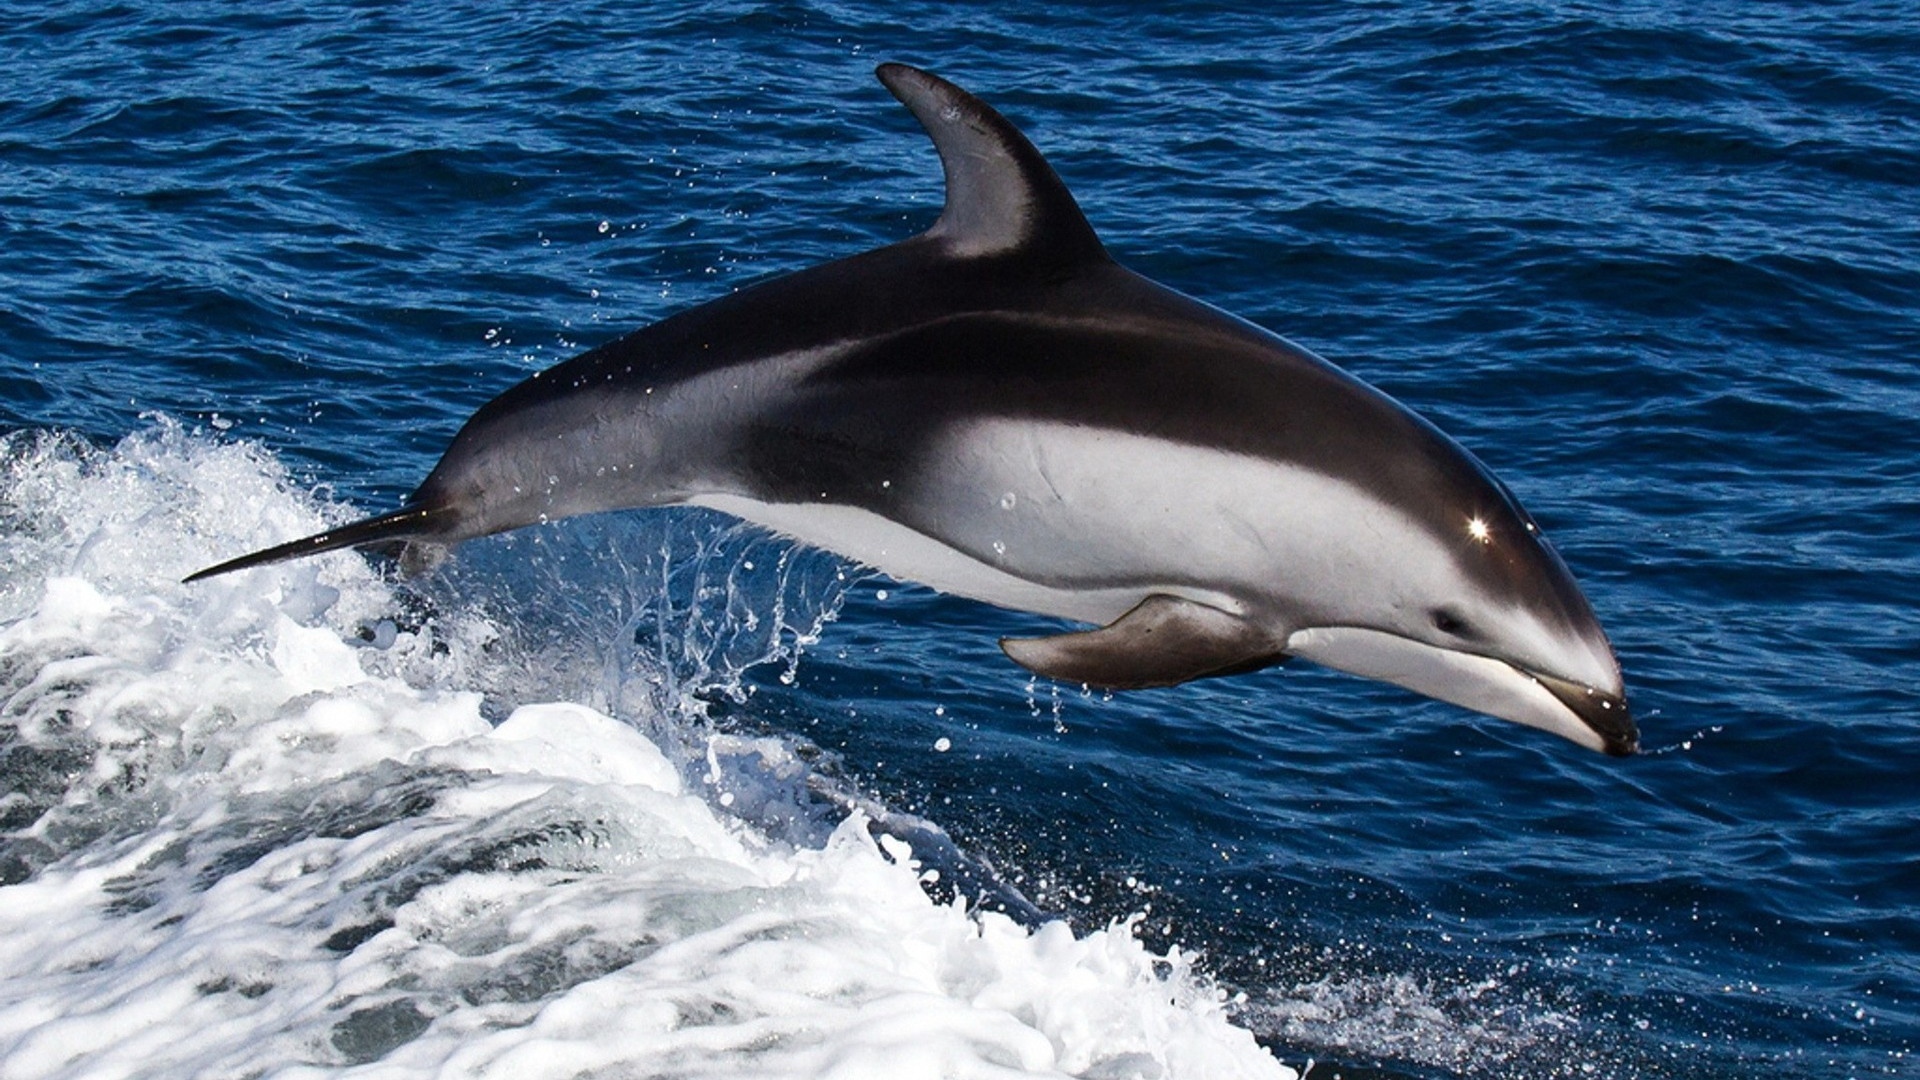 fondos de pantalla de delfines hd,delfín,delfín común de pico corto,mamífero marino,delfín nariz de botella común,delfín nariz de botella